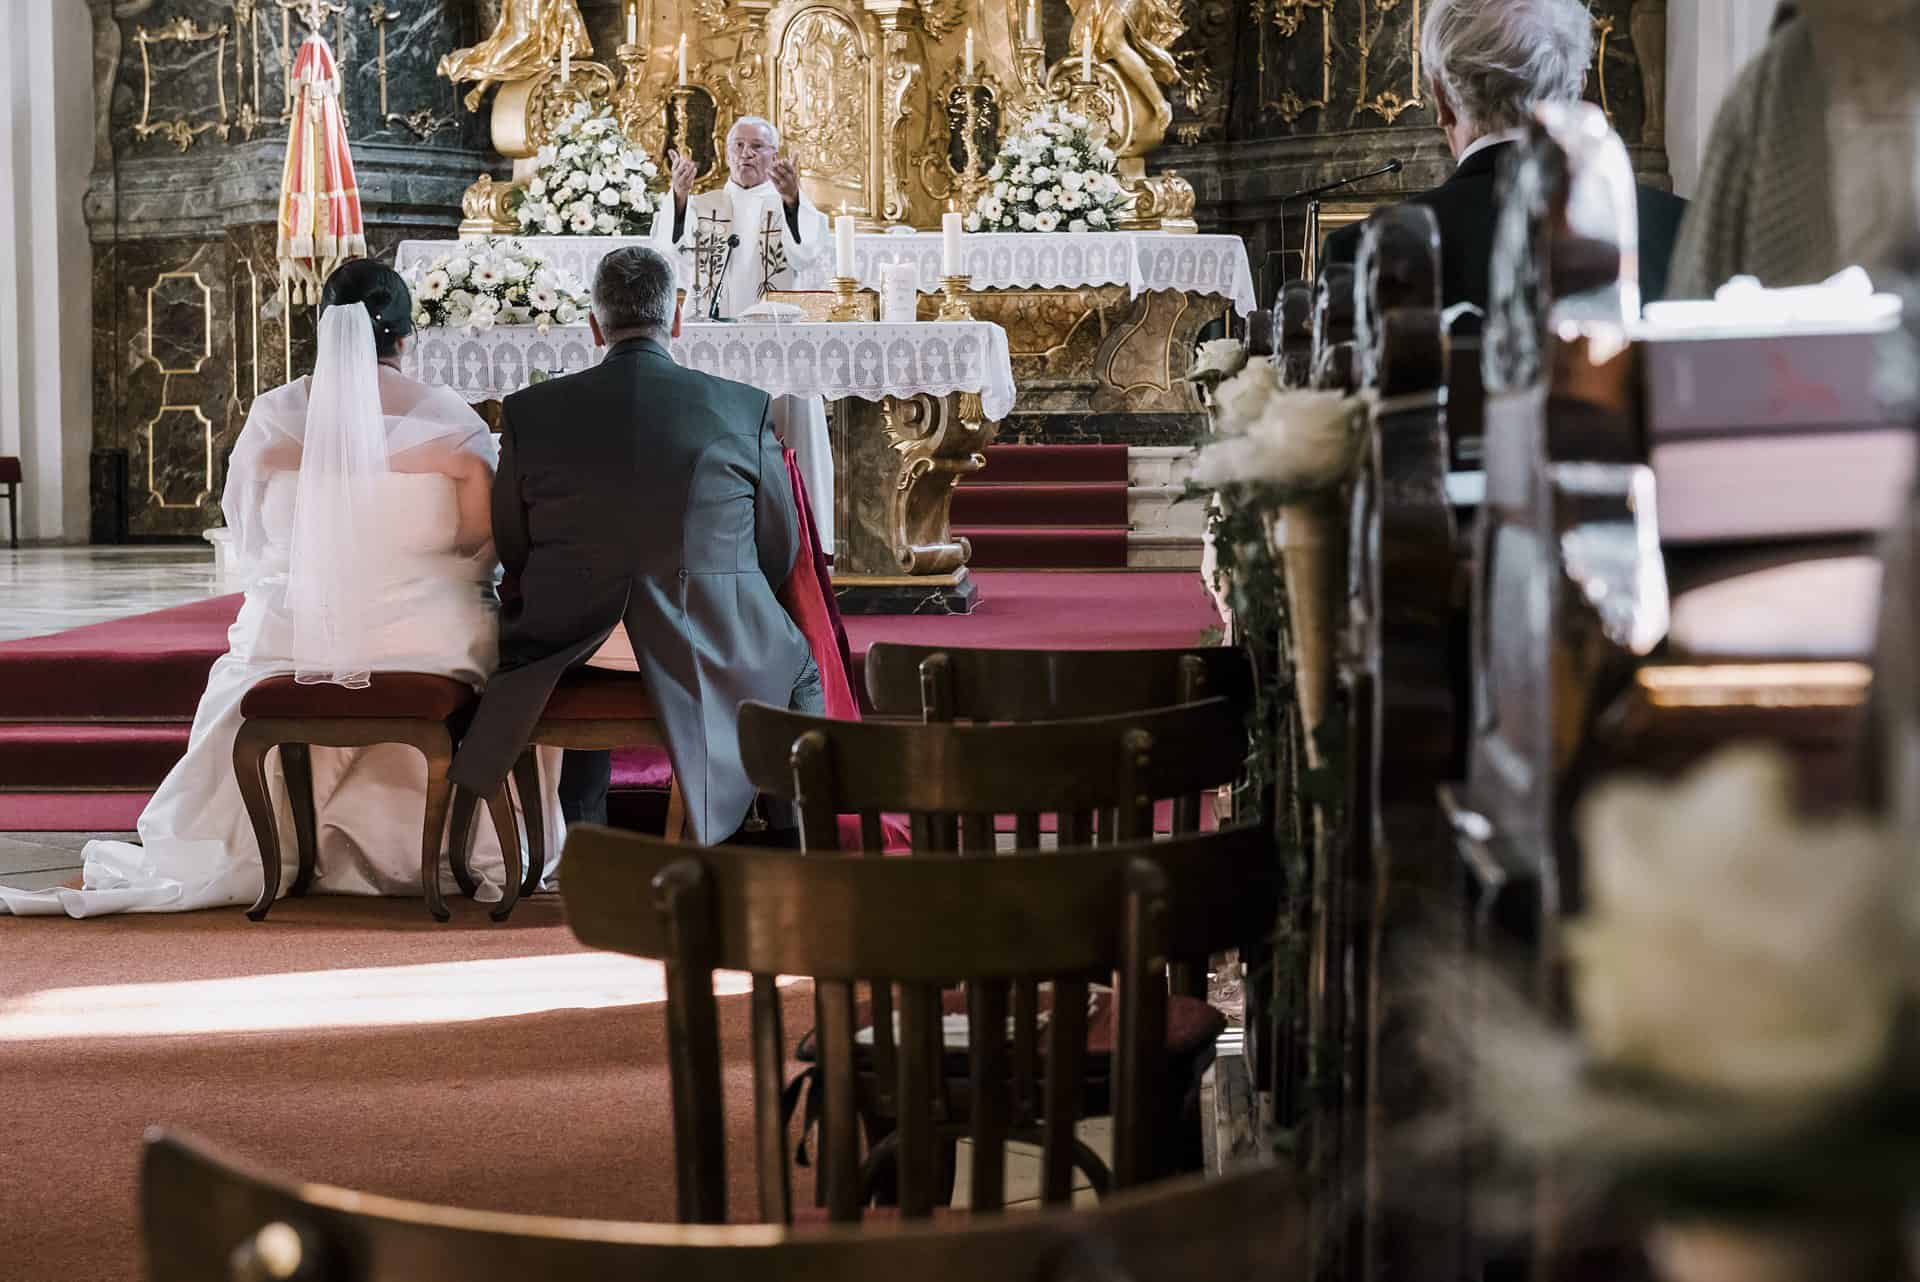 Eine Hochzeitszeremonie in einer Kirche mit Braut und Bräutigam, die in den Kirchenbänken sitzen.